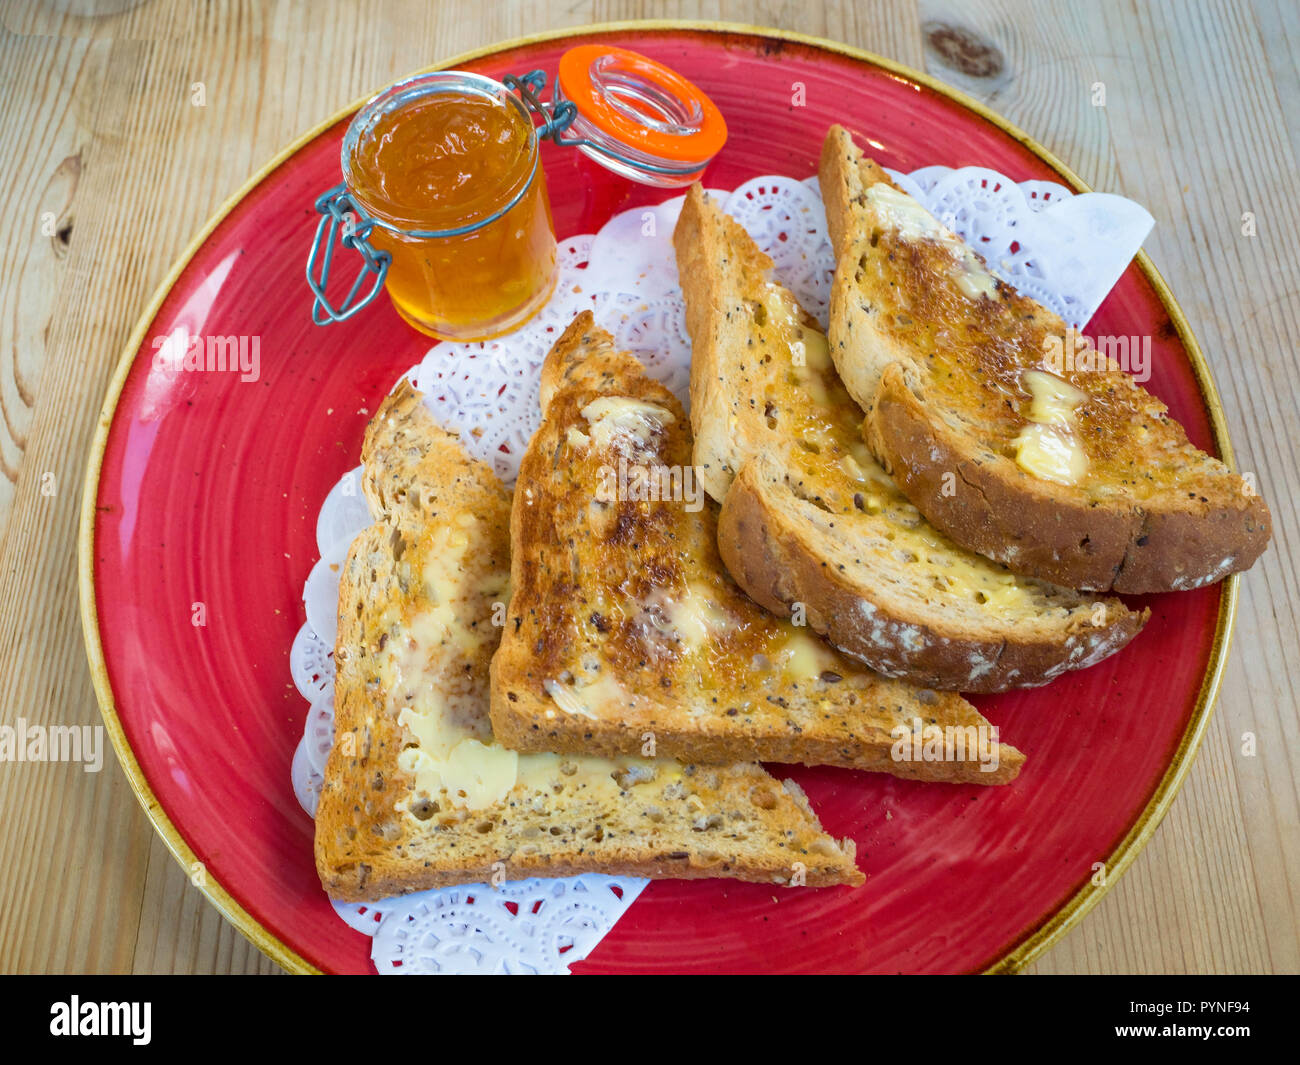 Pan tostado untado con mantequilla multigrain marrón y un tarro de mermelada, un desayuno, merienda o aperitivo en Inglaterra Foto de stock